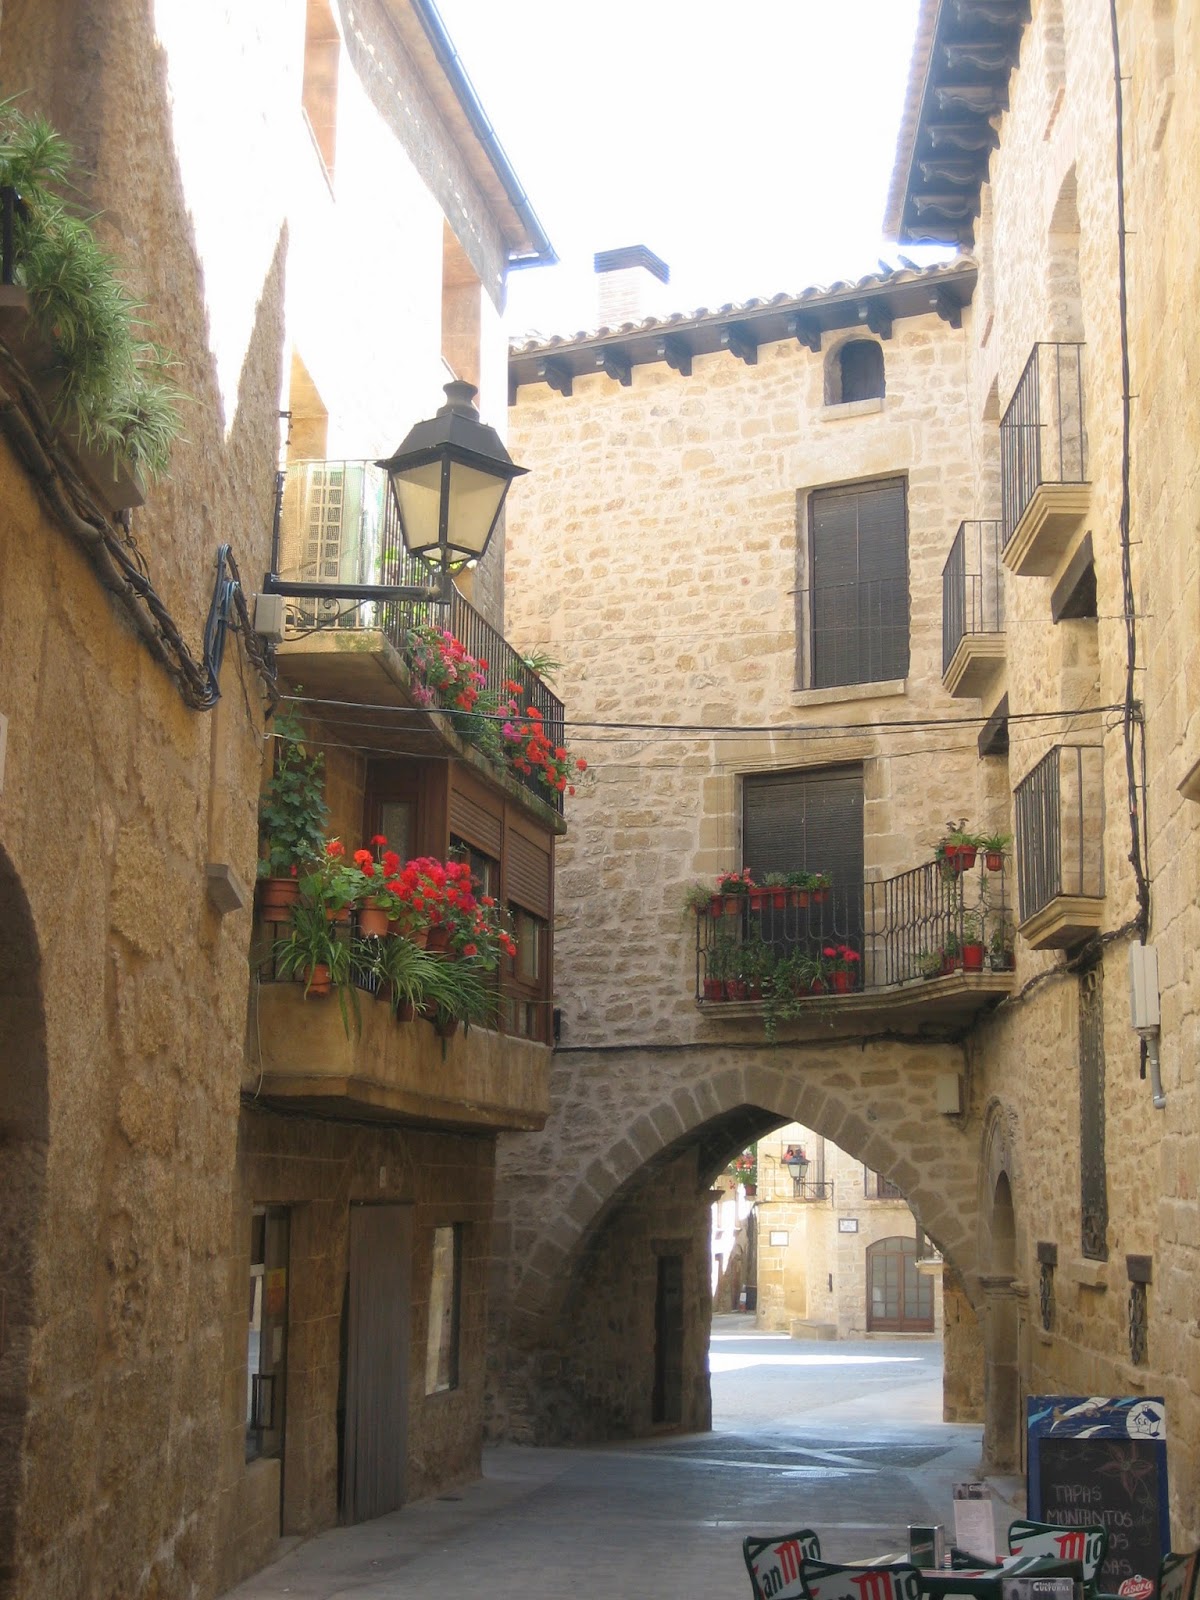 Rutas por España - Blogs de España - Miravet - Calaceite - Cretas (7)